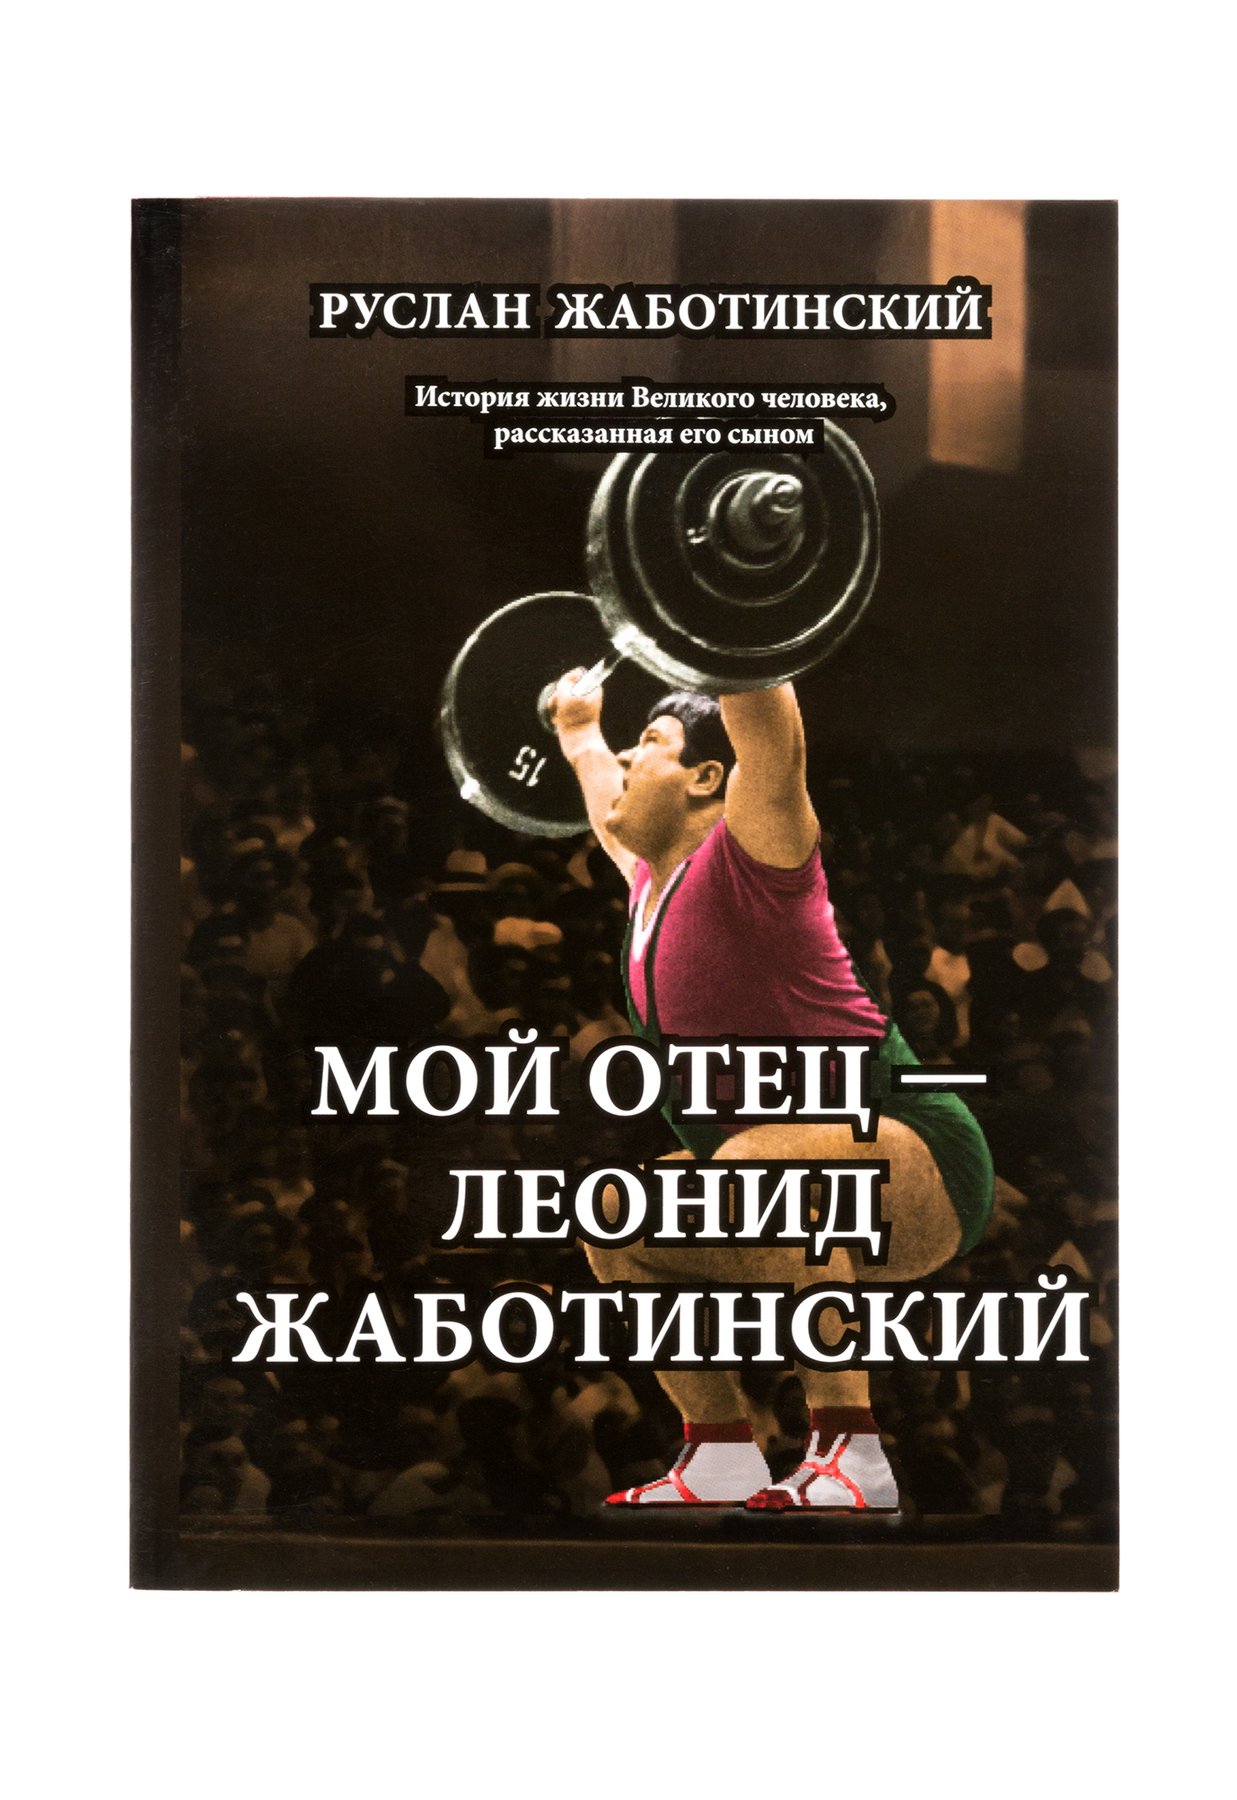 Книга Мой отец Леонид Жаботинский